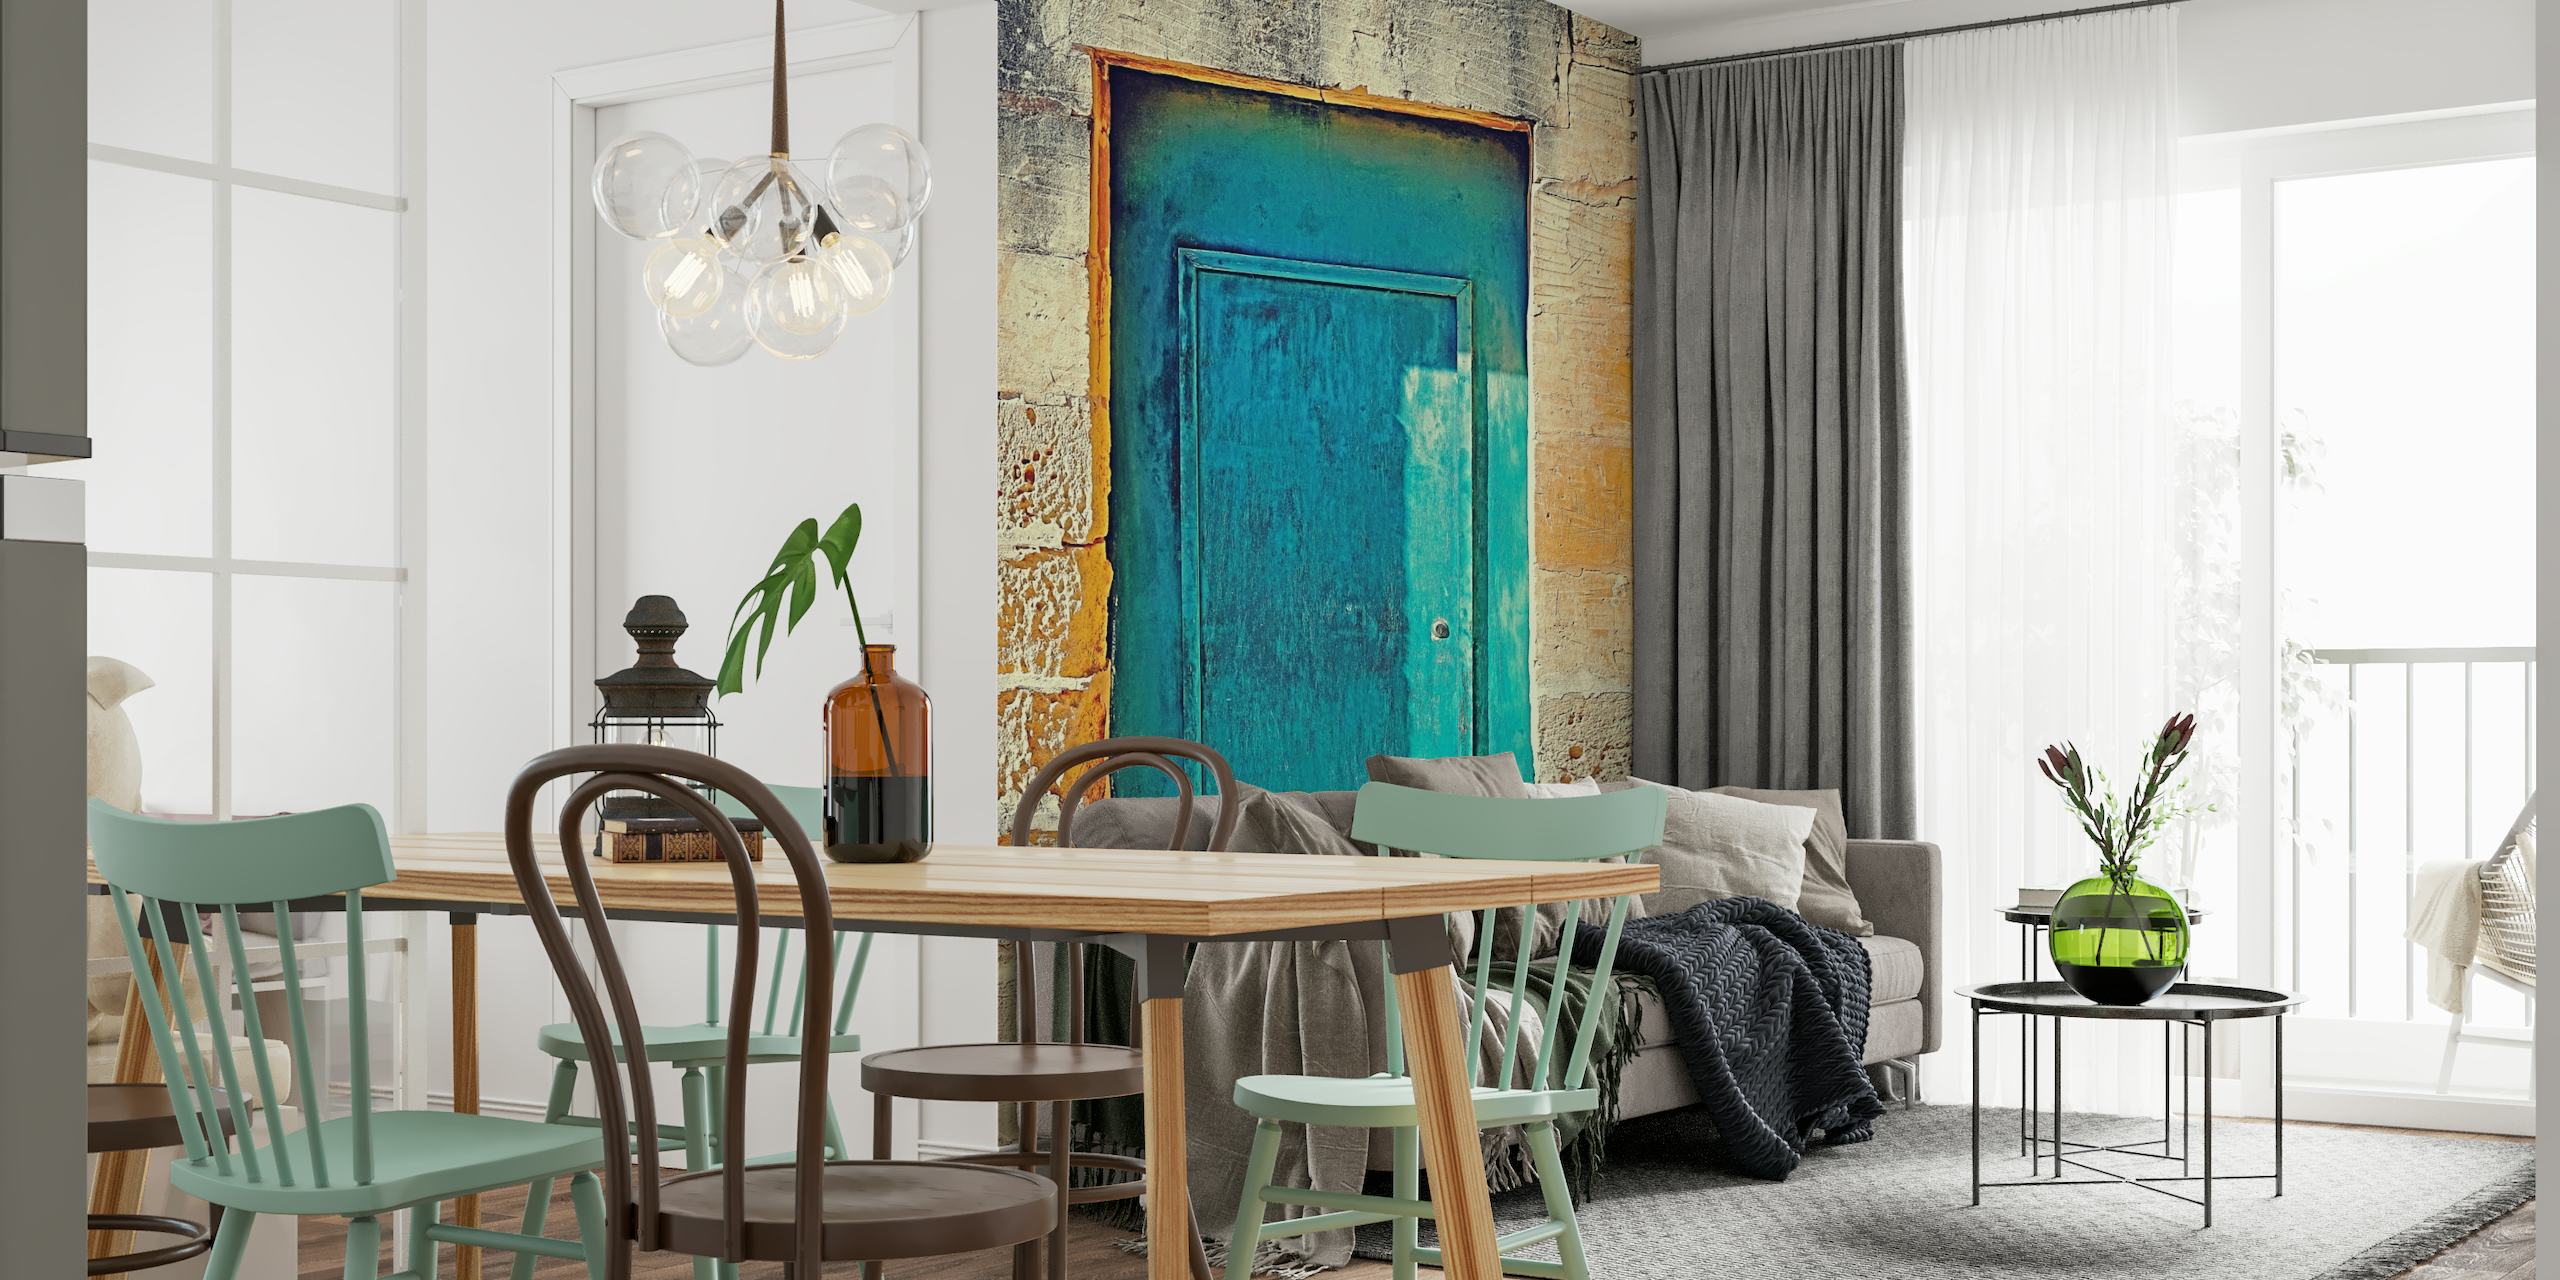 Turquoise Door papel pintado